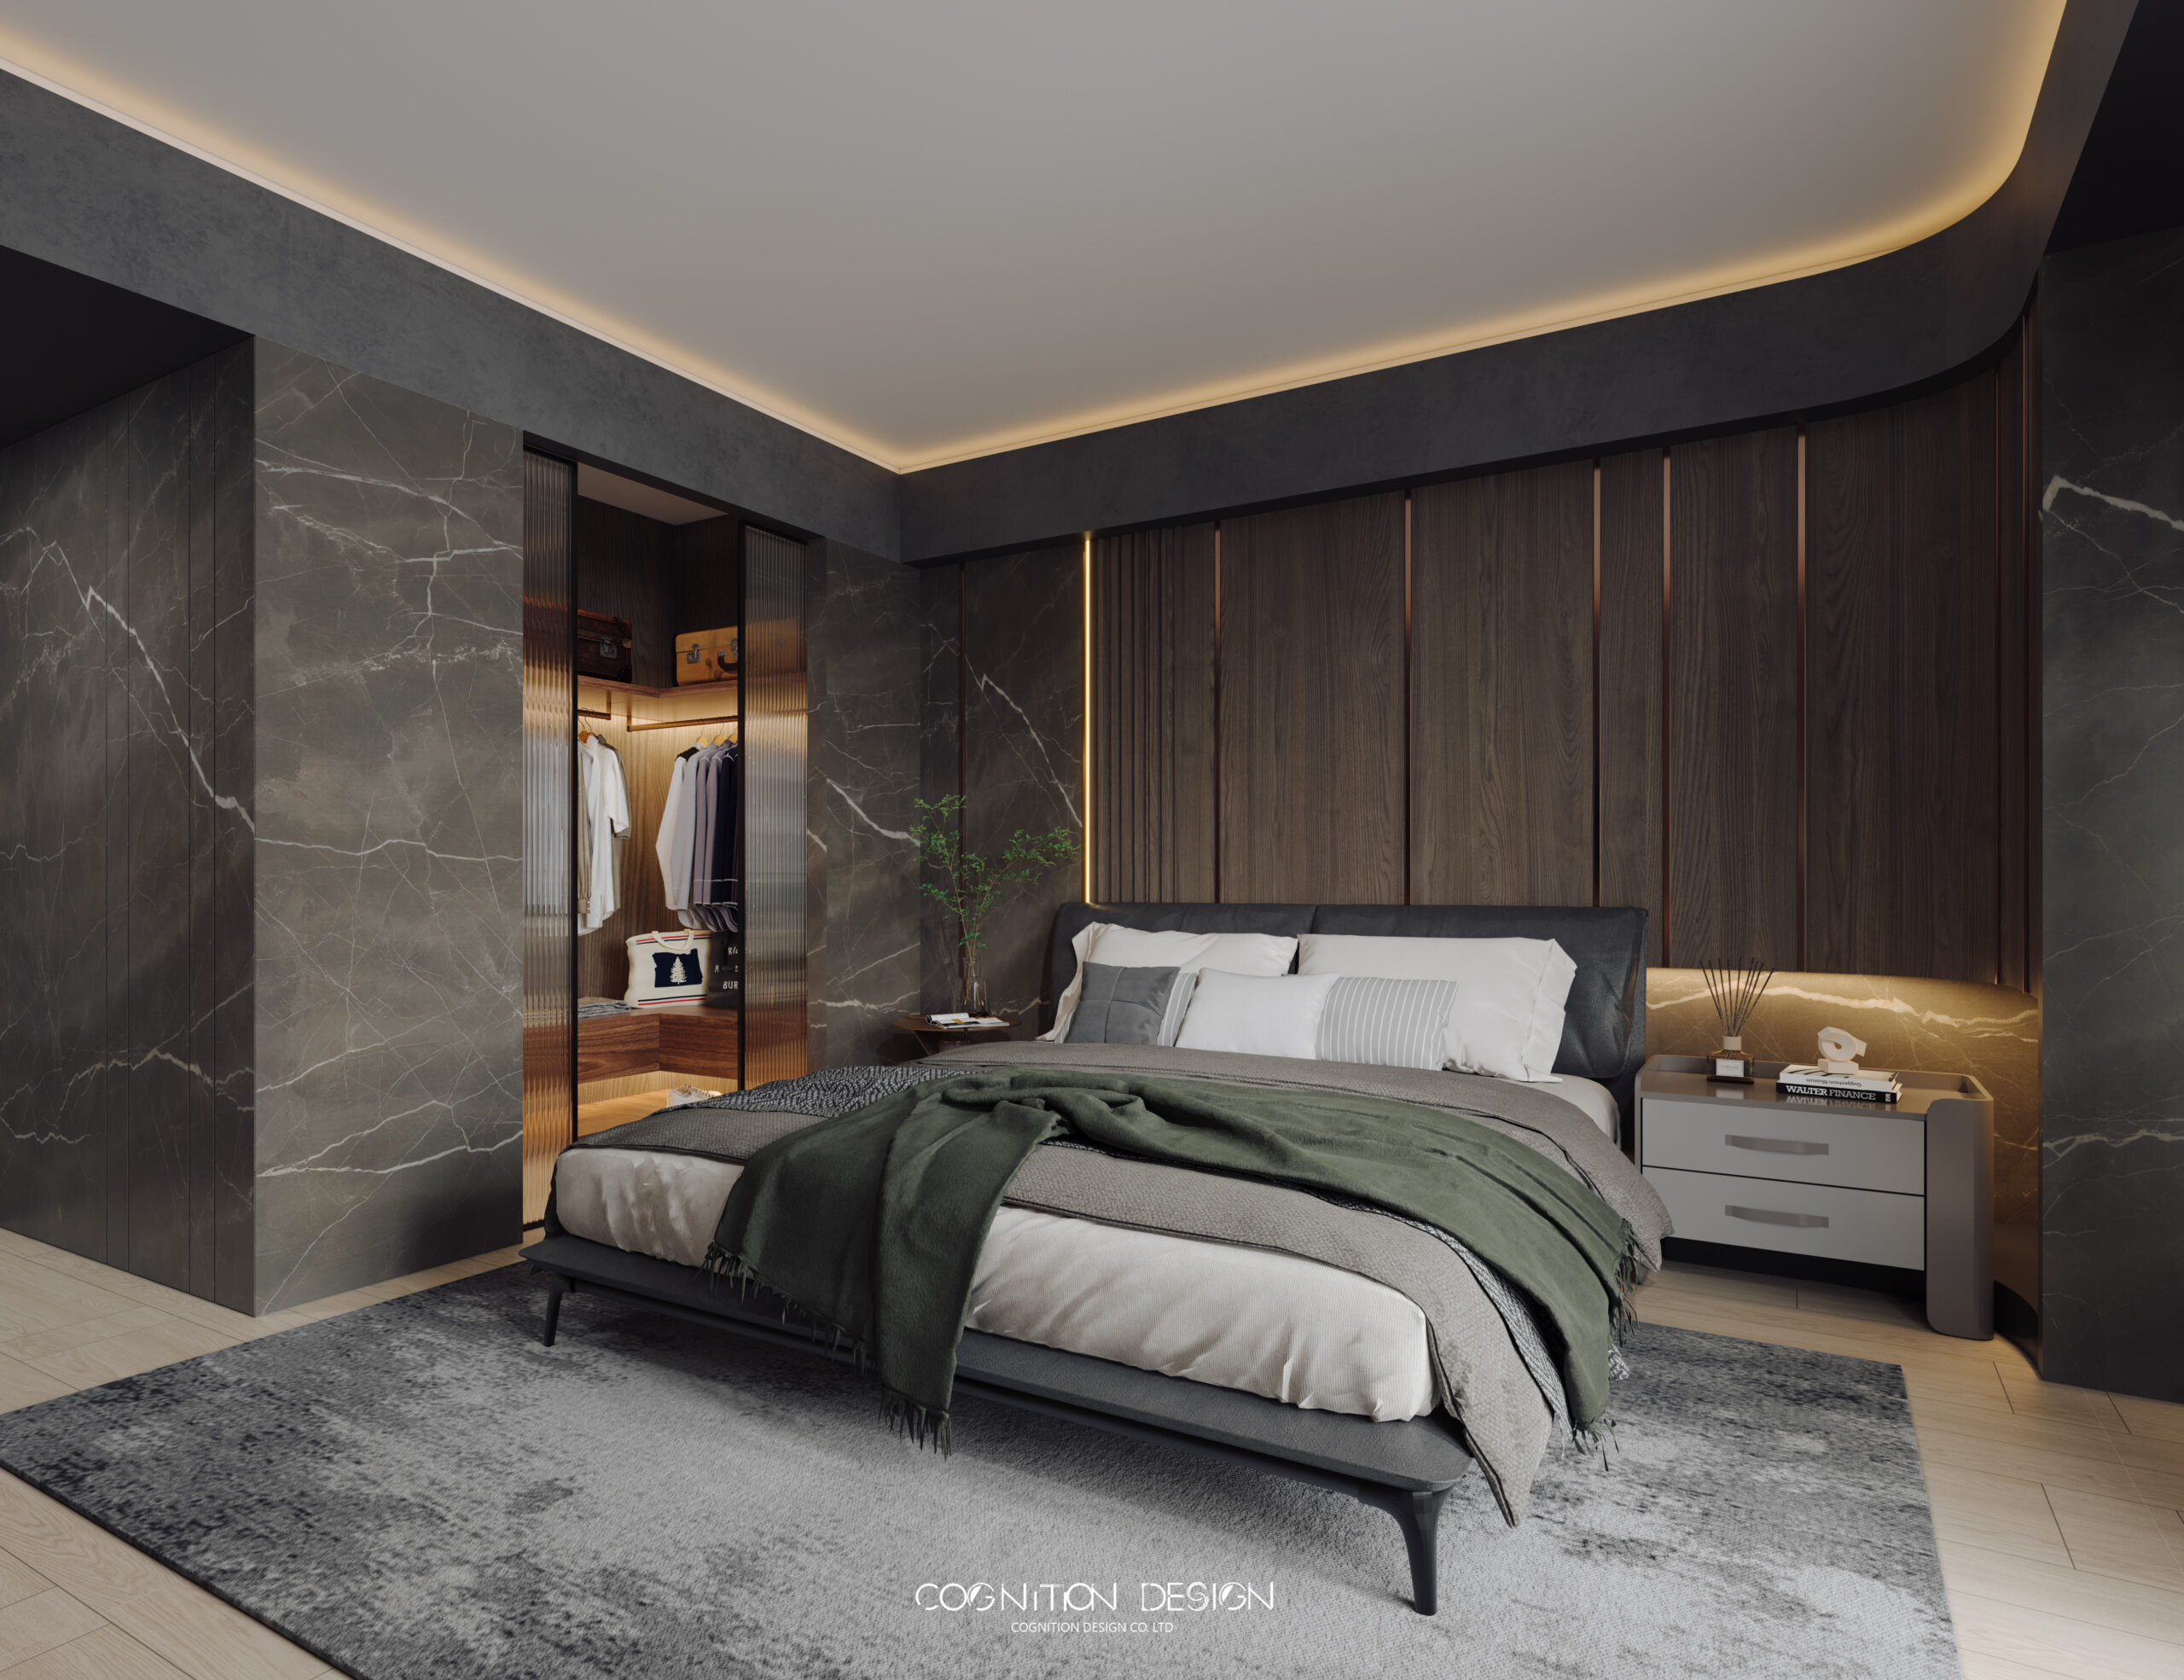 臥室空間設計以簡潔為主，利用大理石、實木貼皮牆面，強調新中式自然感，同時保留自然光線提供舒適的環境